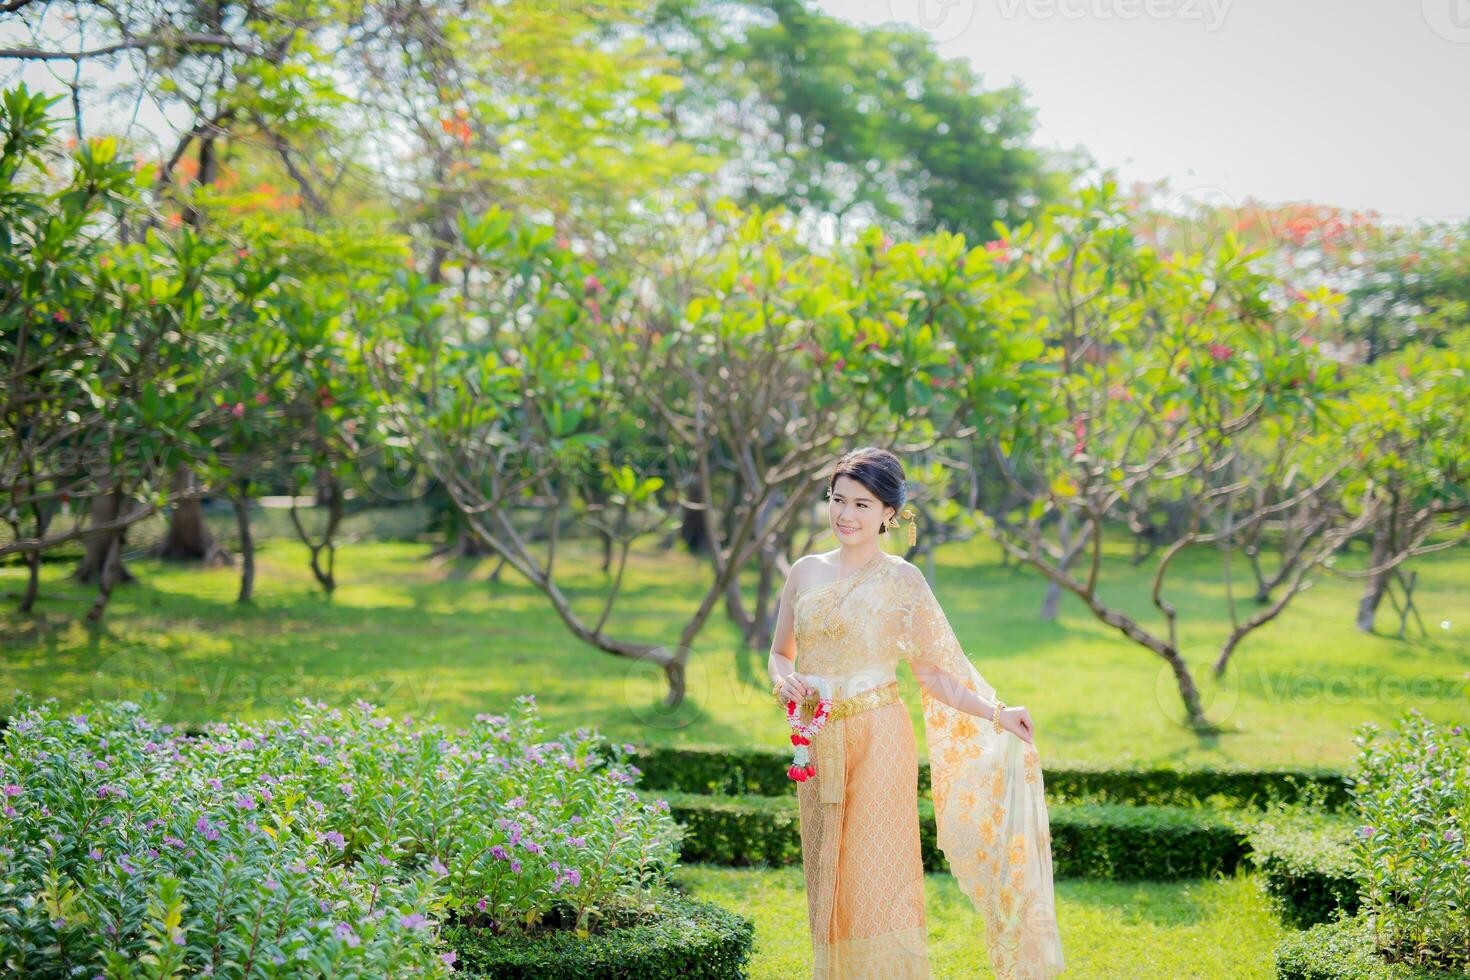 traditionell thai kostym skön kvinna promenad i trädgård foto